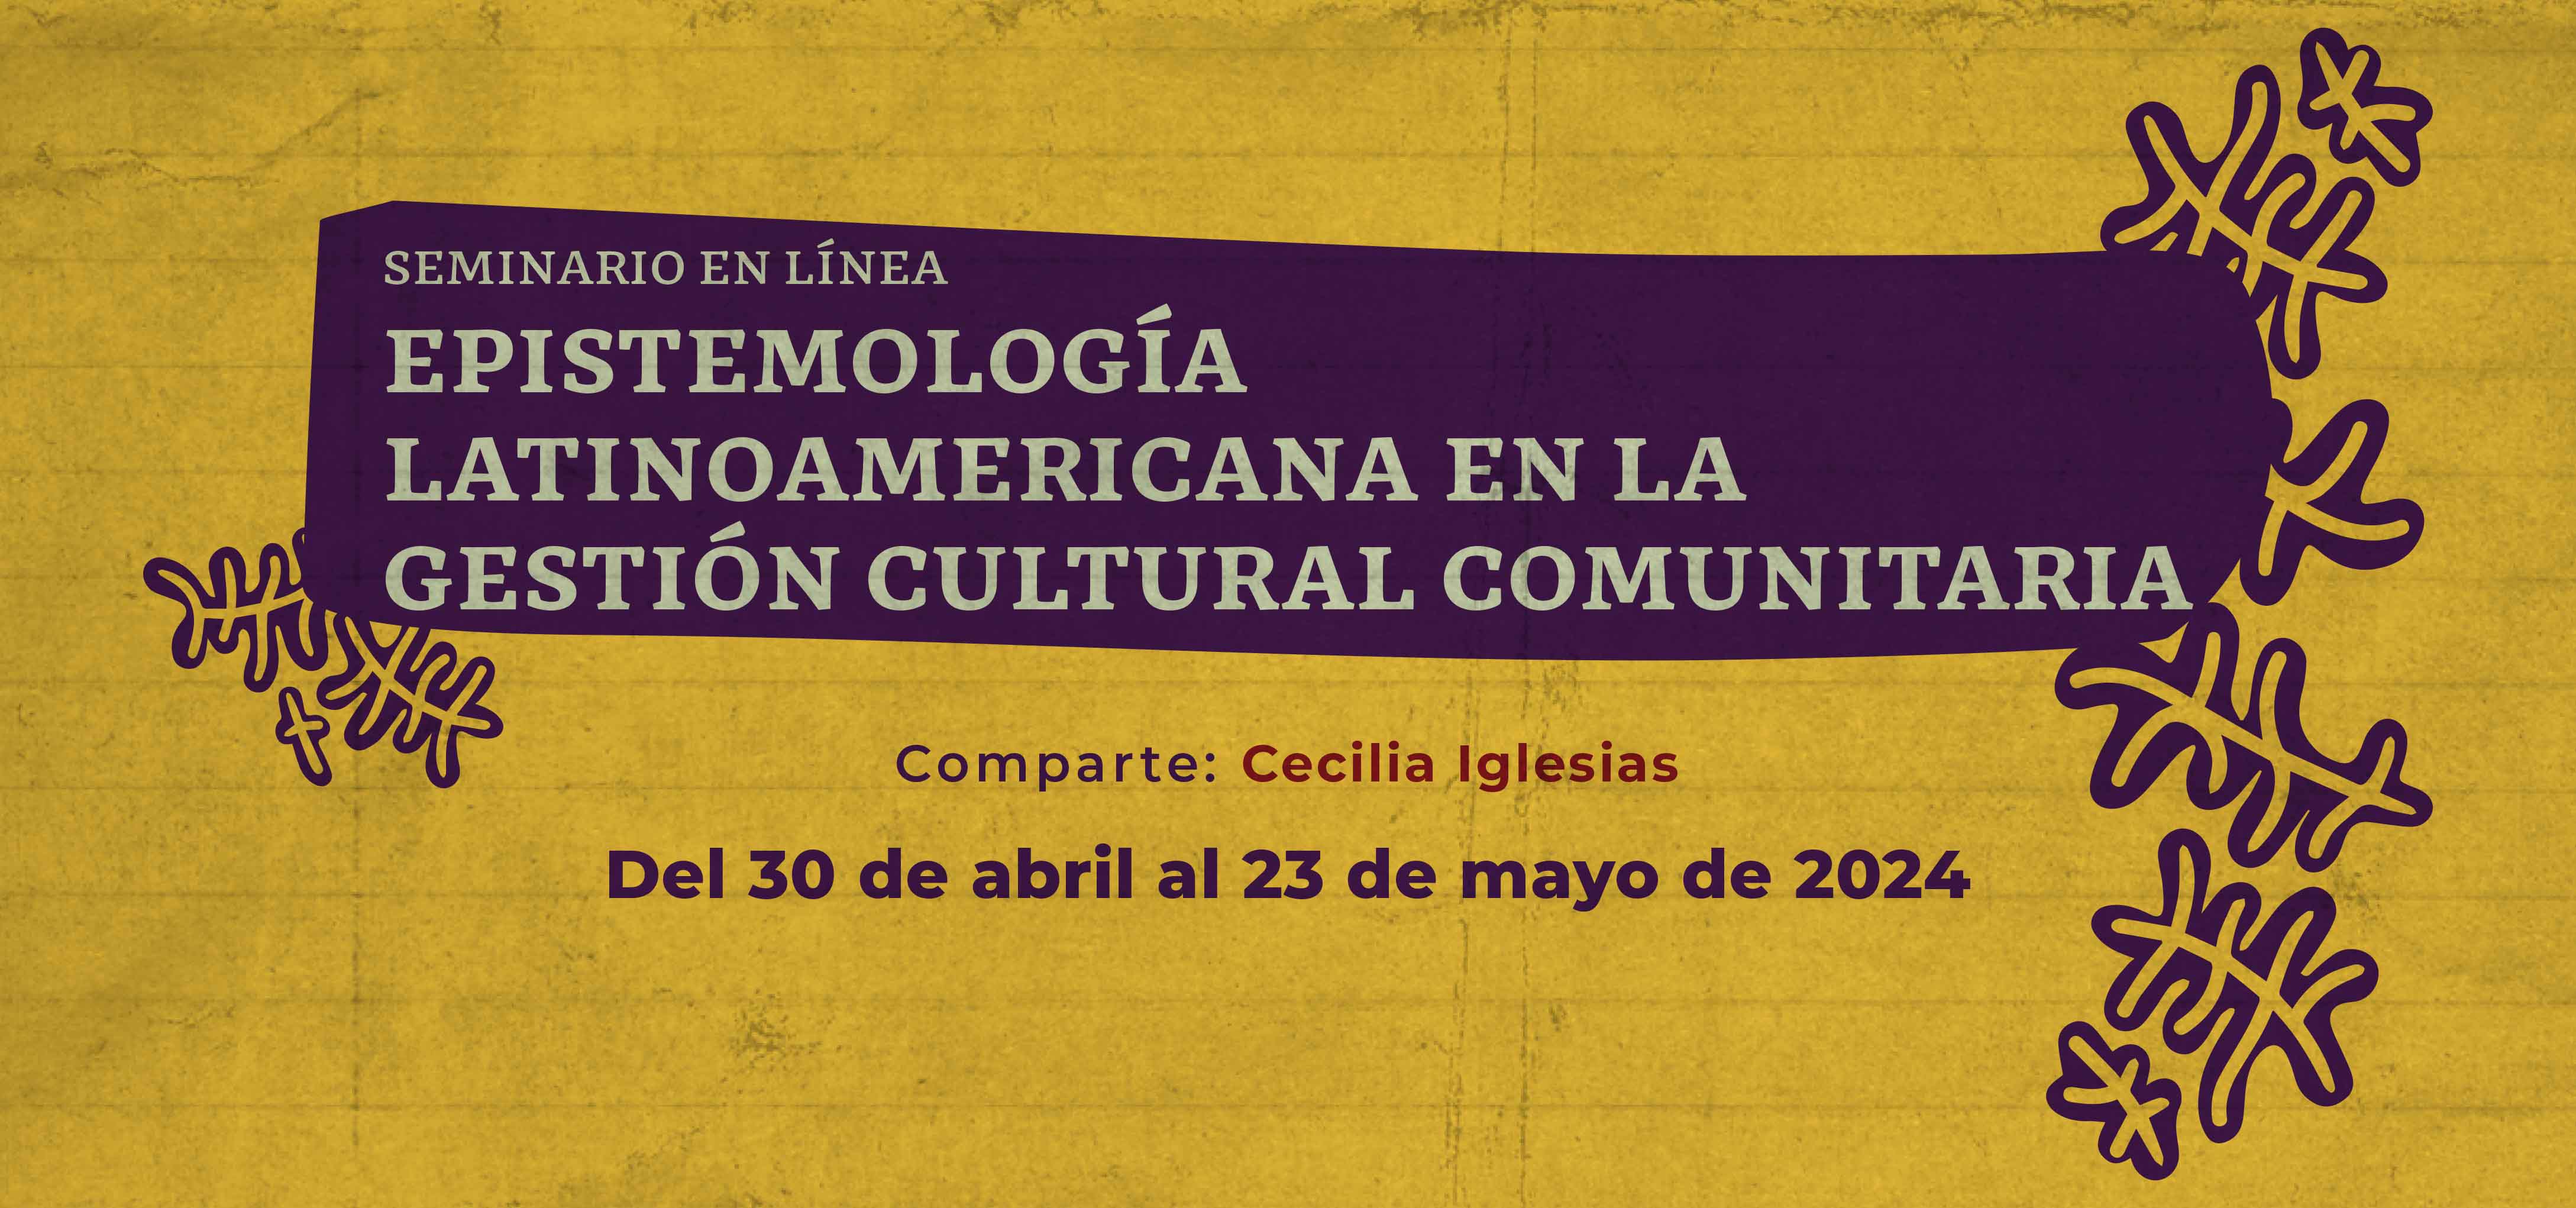 Actividad Cultural Comunitaria: Seminario en línea. Epistemología latinoamericana en la gestión cultural comunitaria